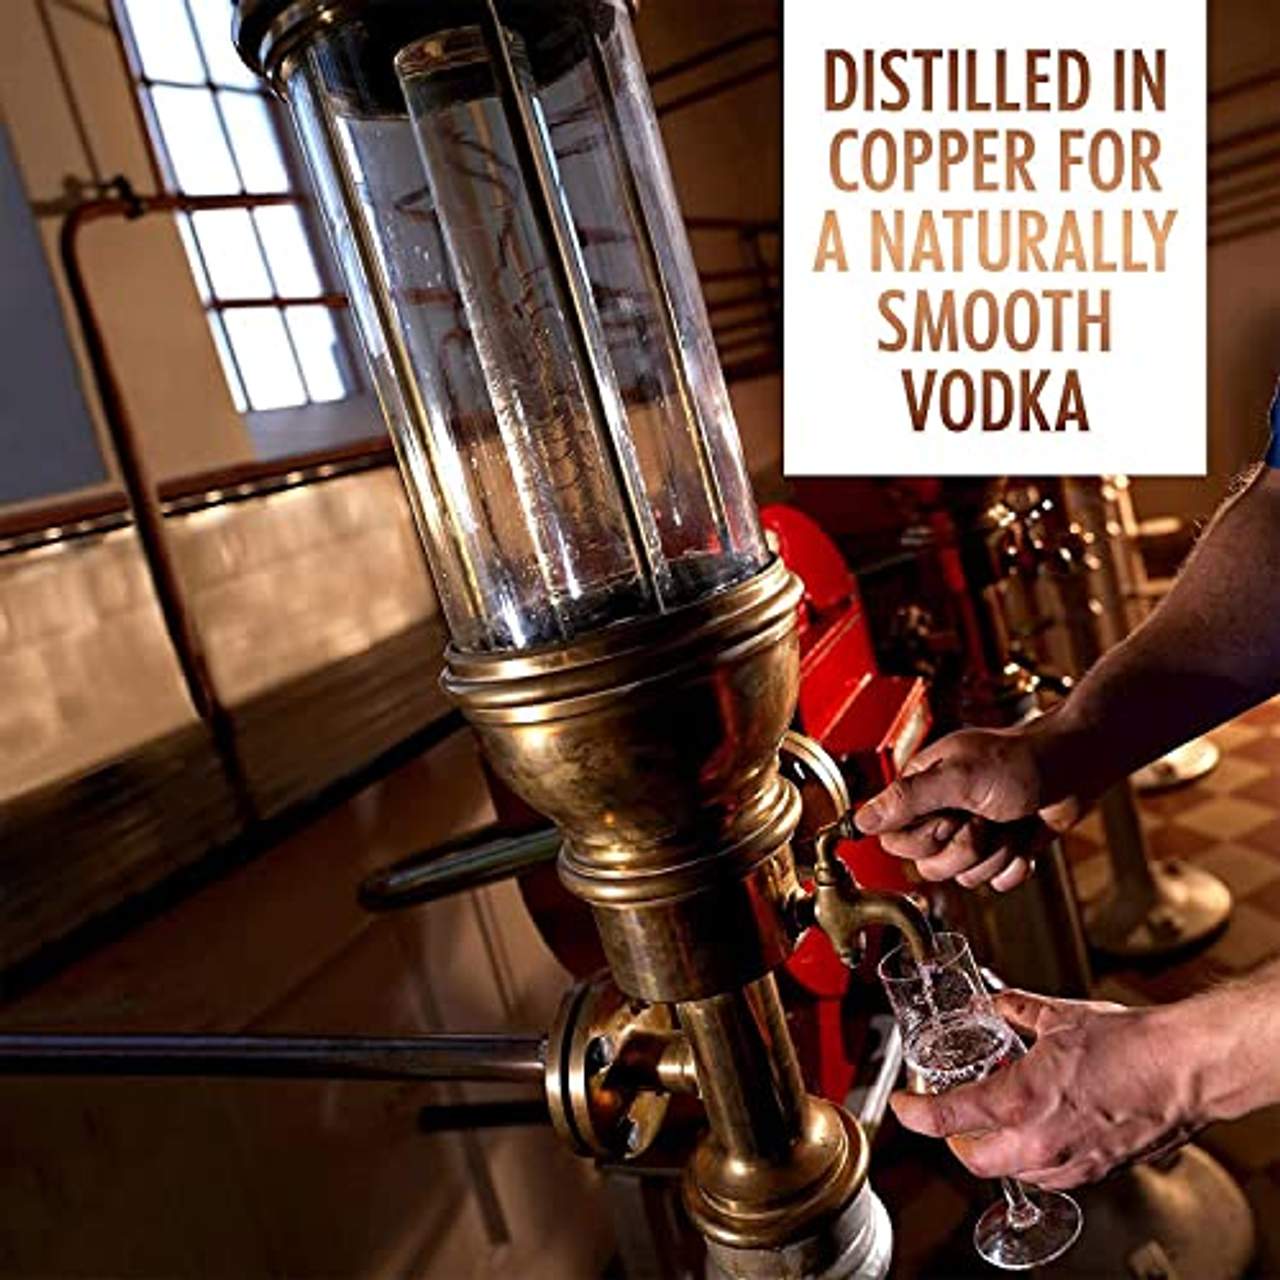 Absolut Elyx Per Hand destillierter Luxus Wodka aus Schweden